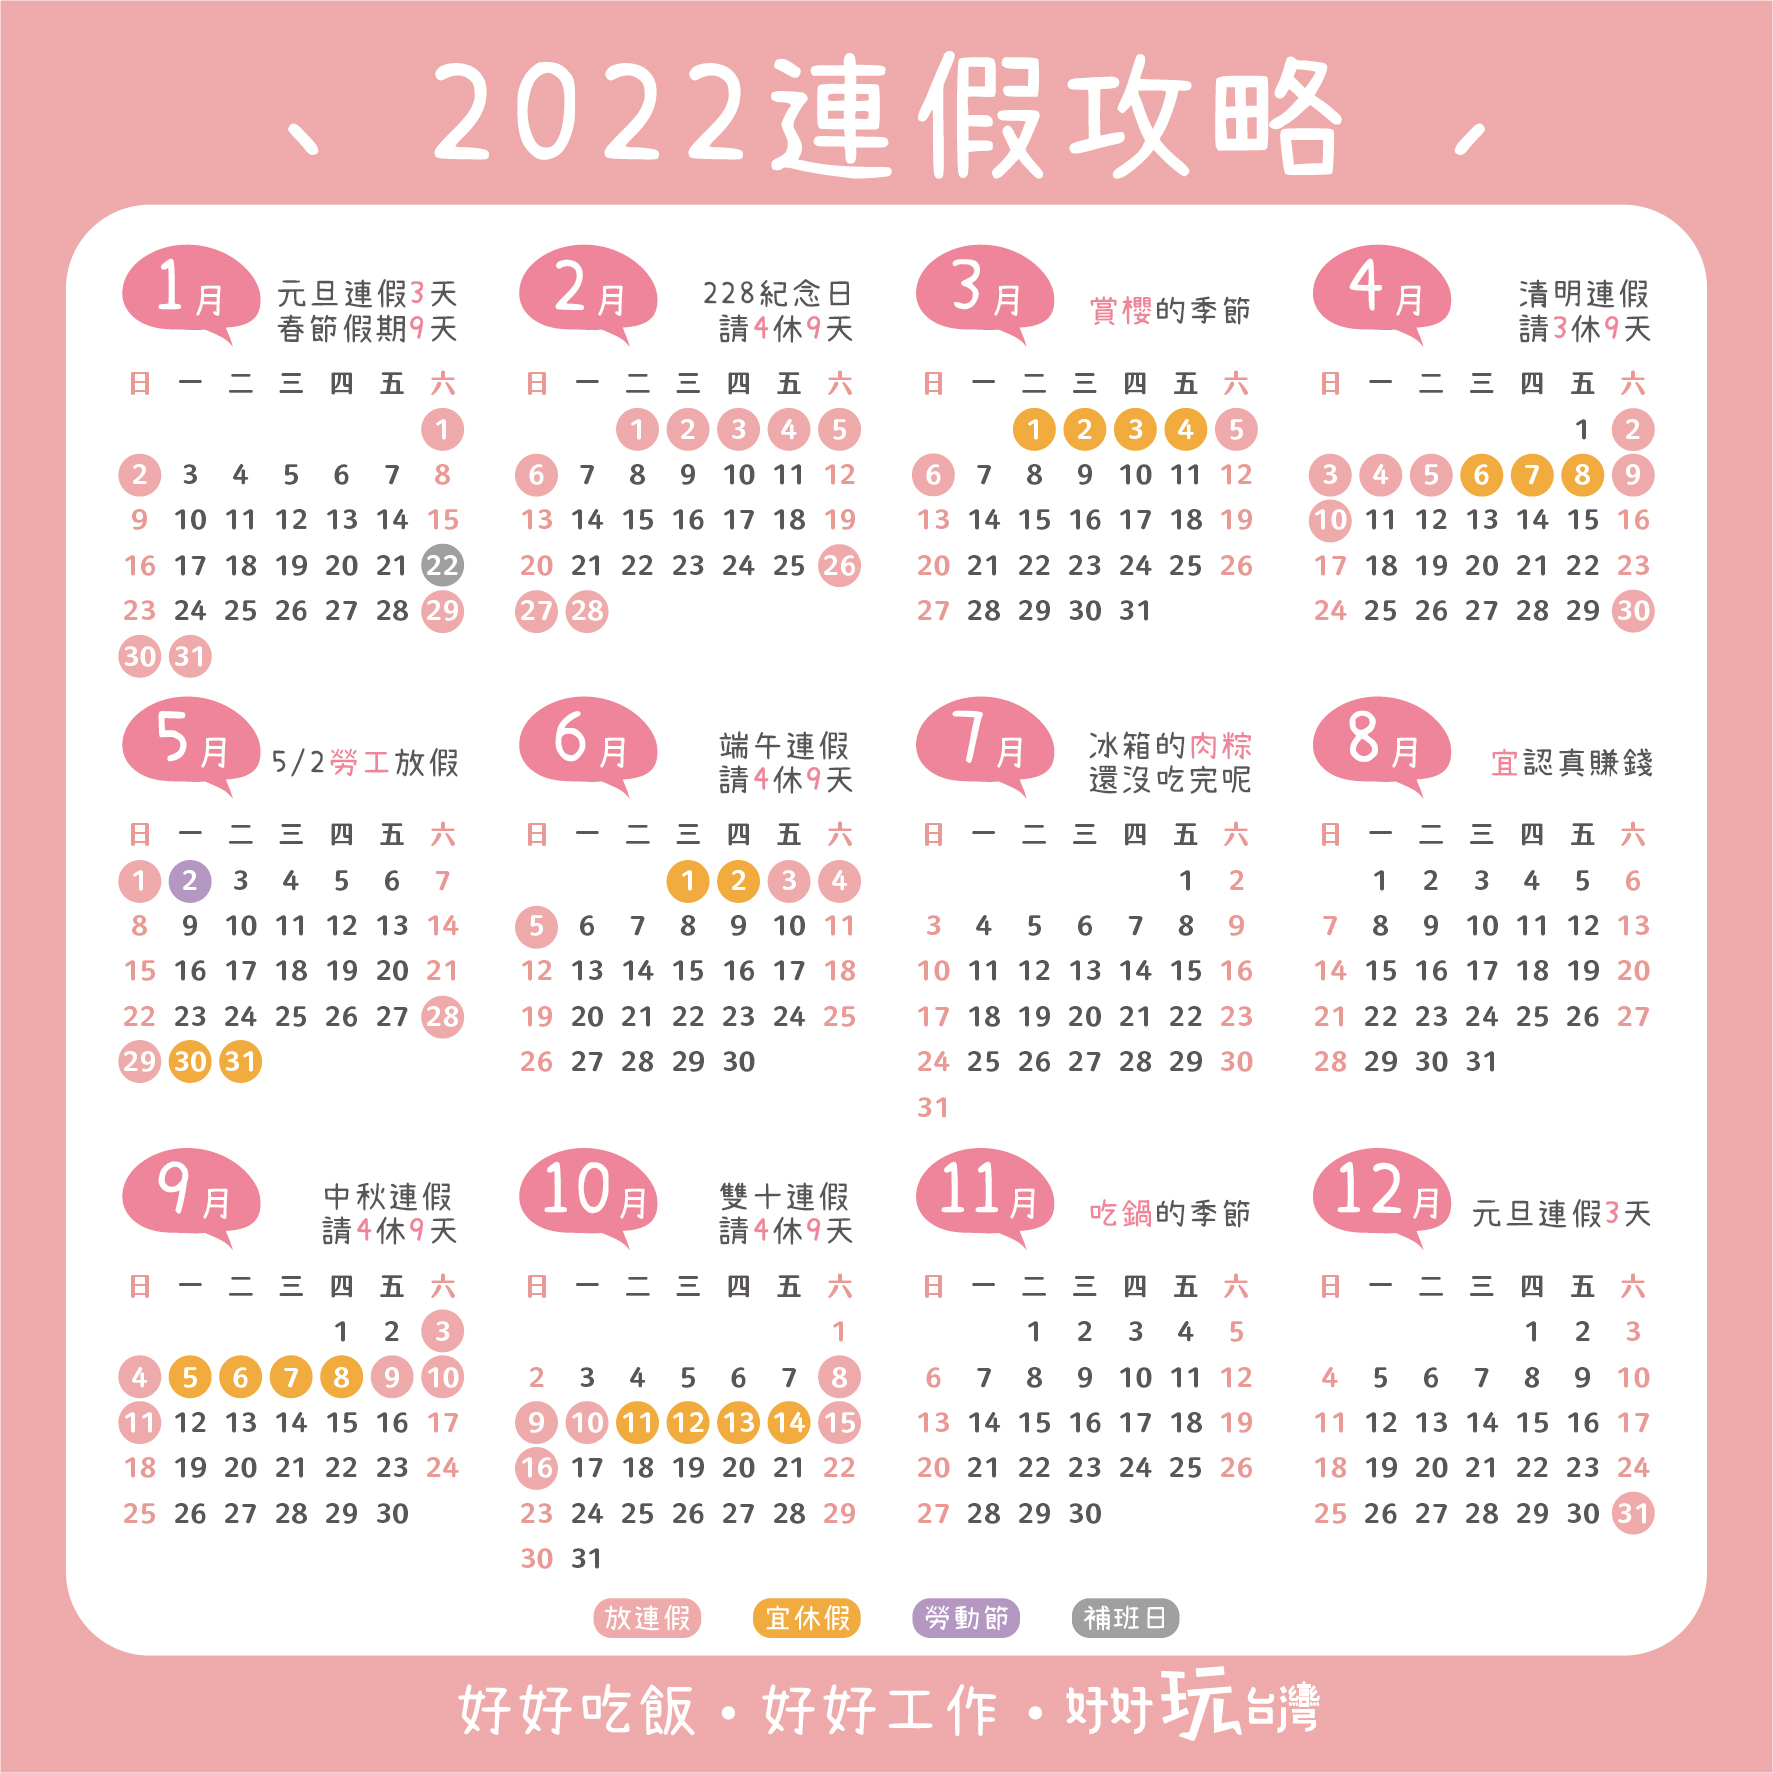 2023 春節 2021年の中国旧正月は2月11日からスタート。今年の春節はステイホームでネットショッピング三昧か